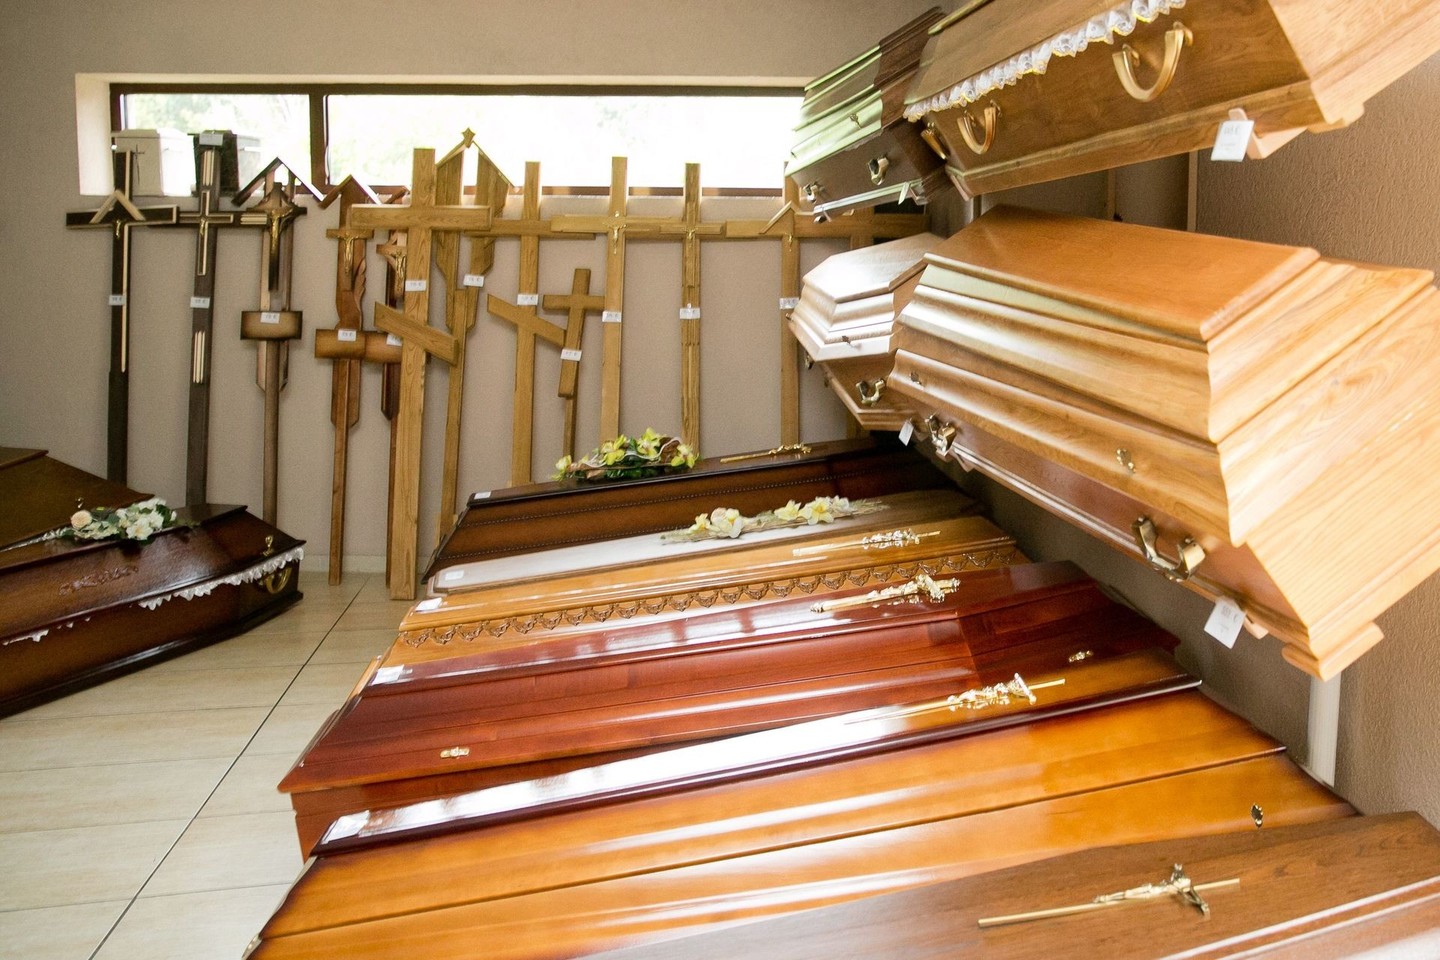 Idėja įkurti privačius laidojimo namus G.Tumosienei kilo po viešnagės Jungtinėse Amerikos valstijose.<br>T.Bauro nuotr.